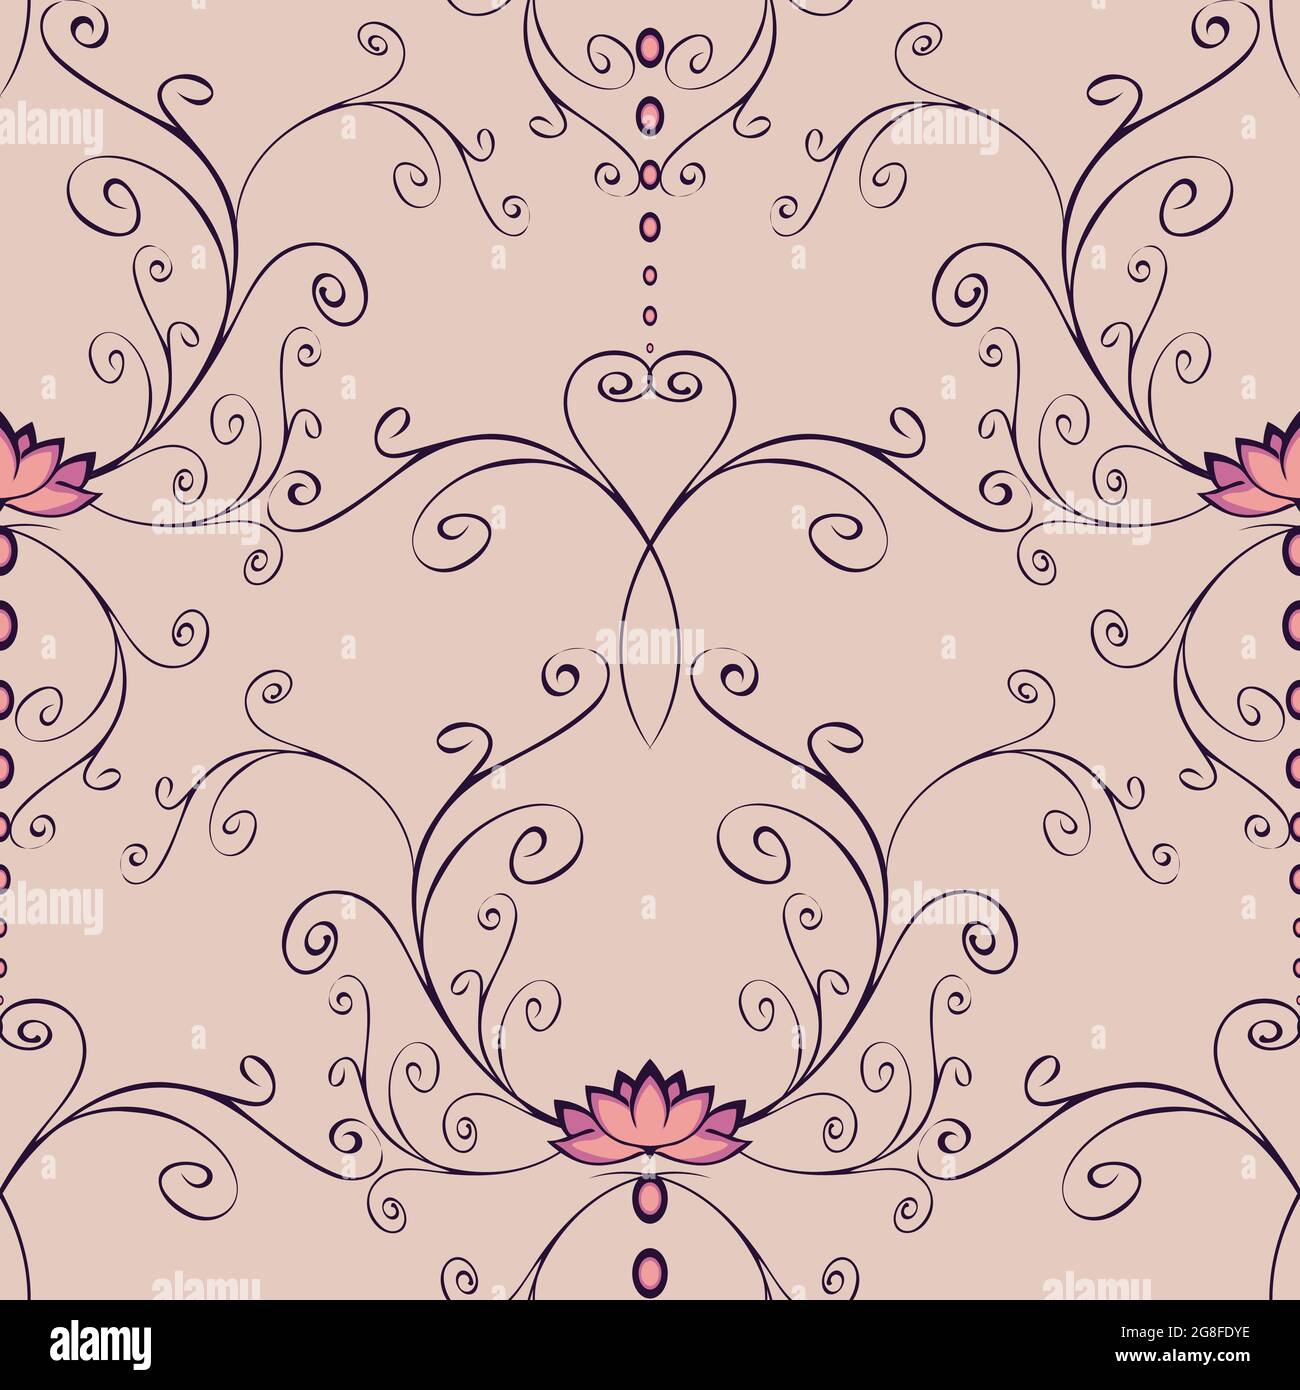 Nahtloses Vektor-Muster mit rosa Lotusblumen und geschwungenen Linien auf violettem Hintergrund. Romantisches, ruhiges florales Tapetendesign. Stock Vektor